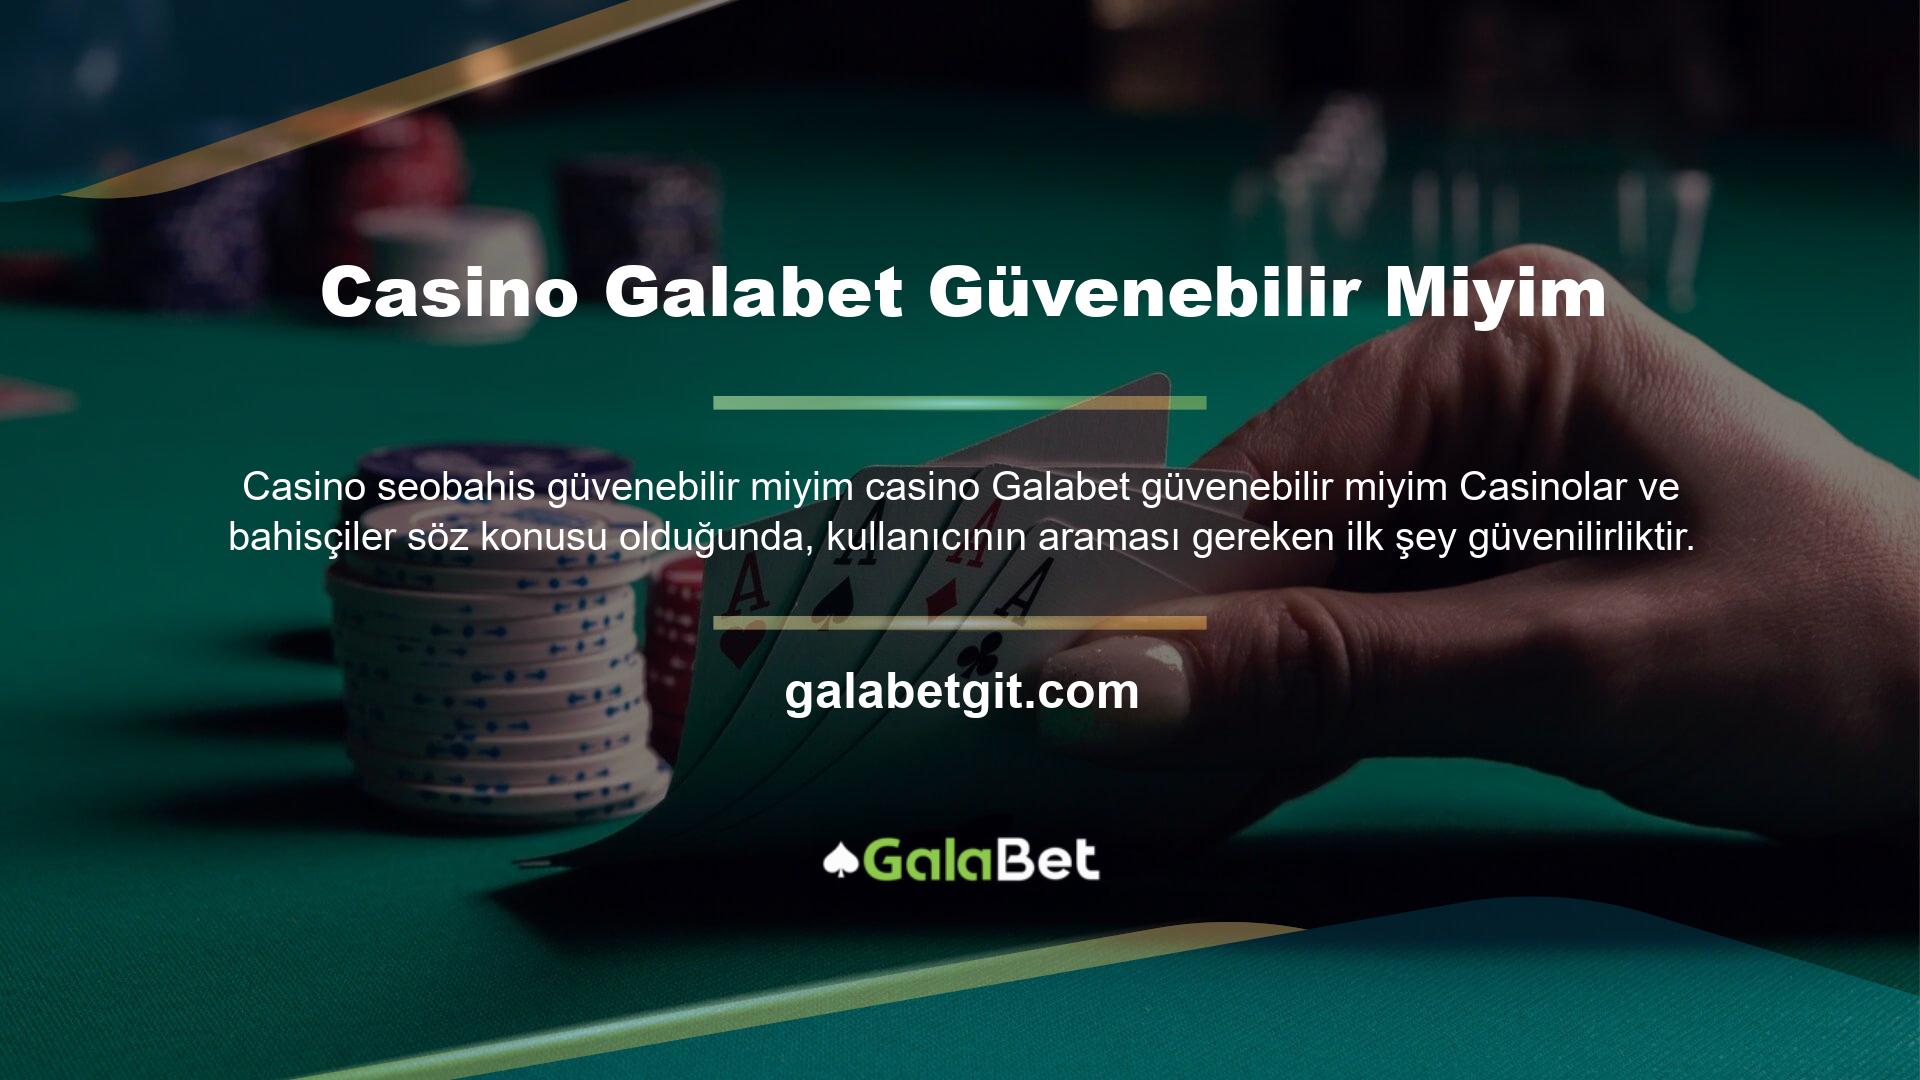 Galabet casino sitesi bu unsurları en iyi yapan sitelerden biridir